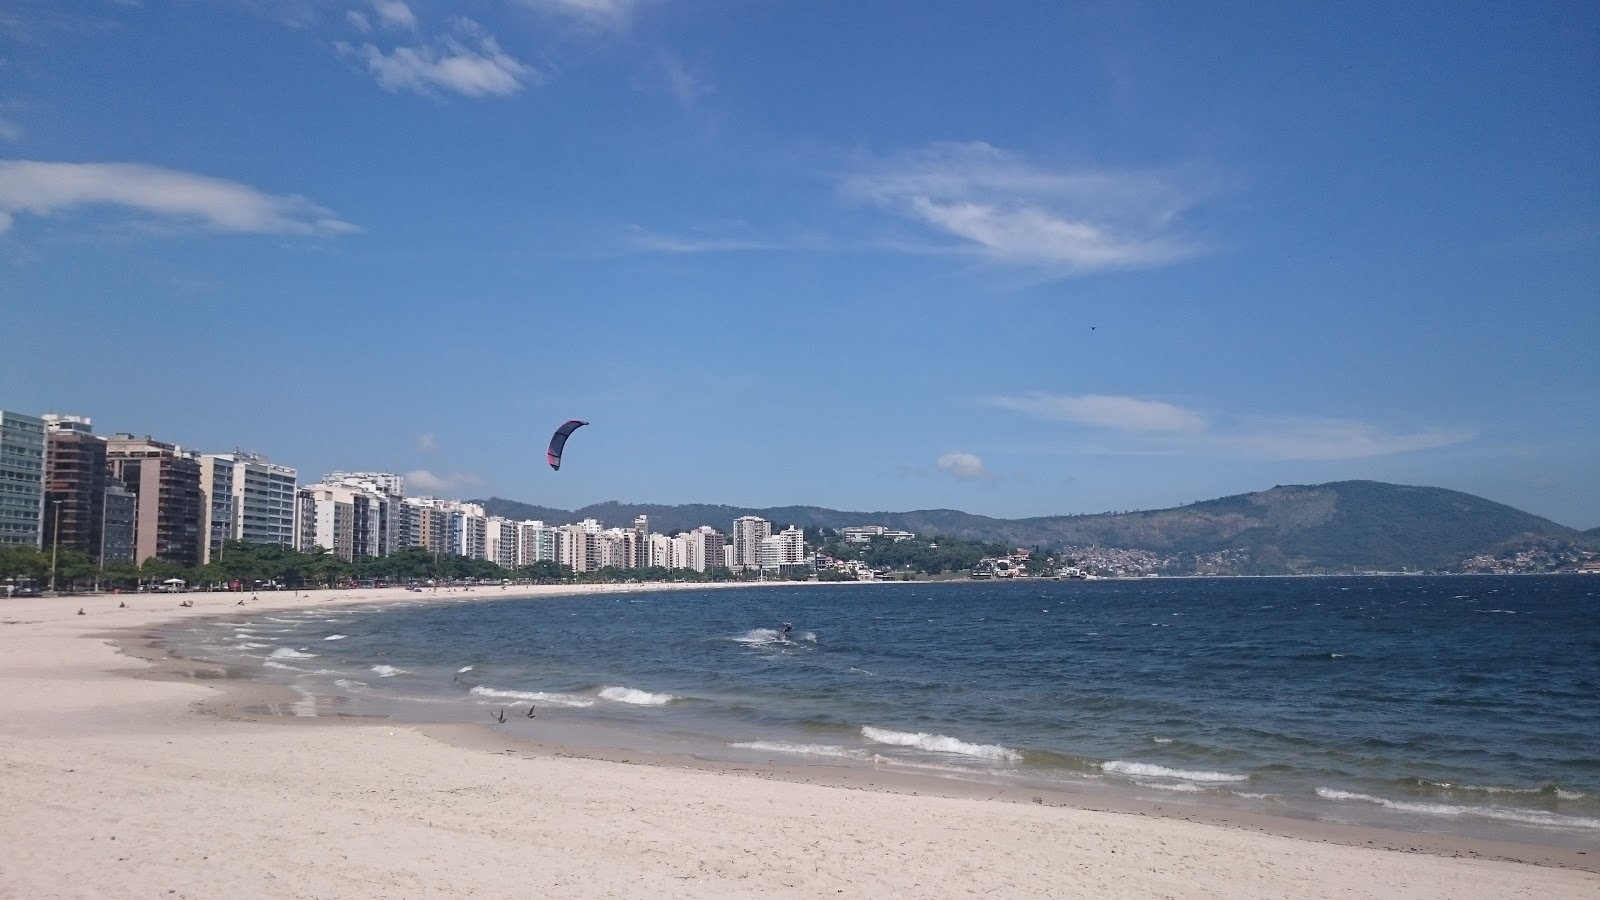 Praia de Icarai'in fotoğrafı parlak ince kum yüzey ile